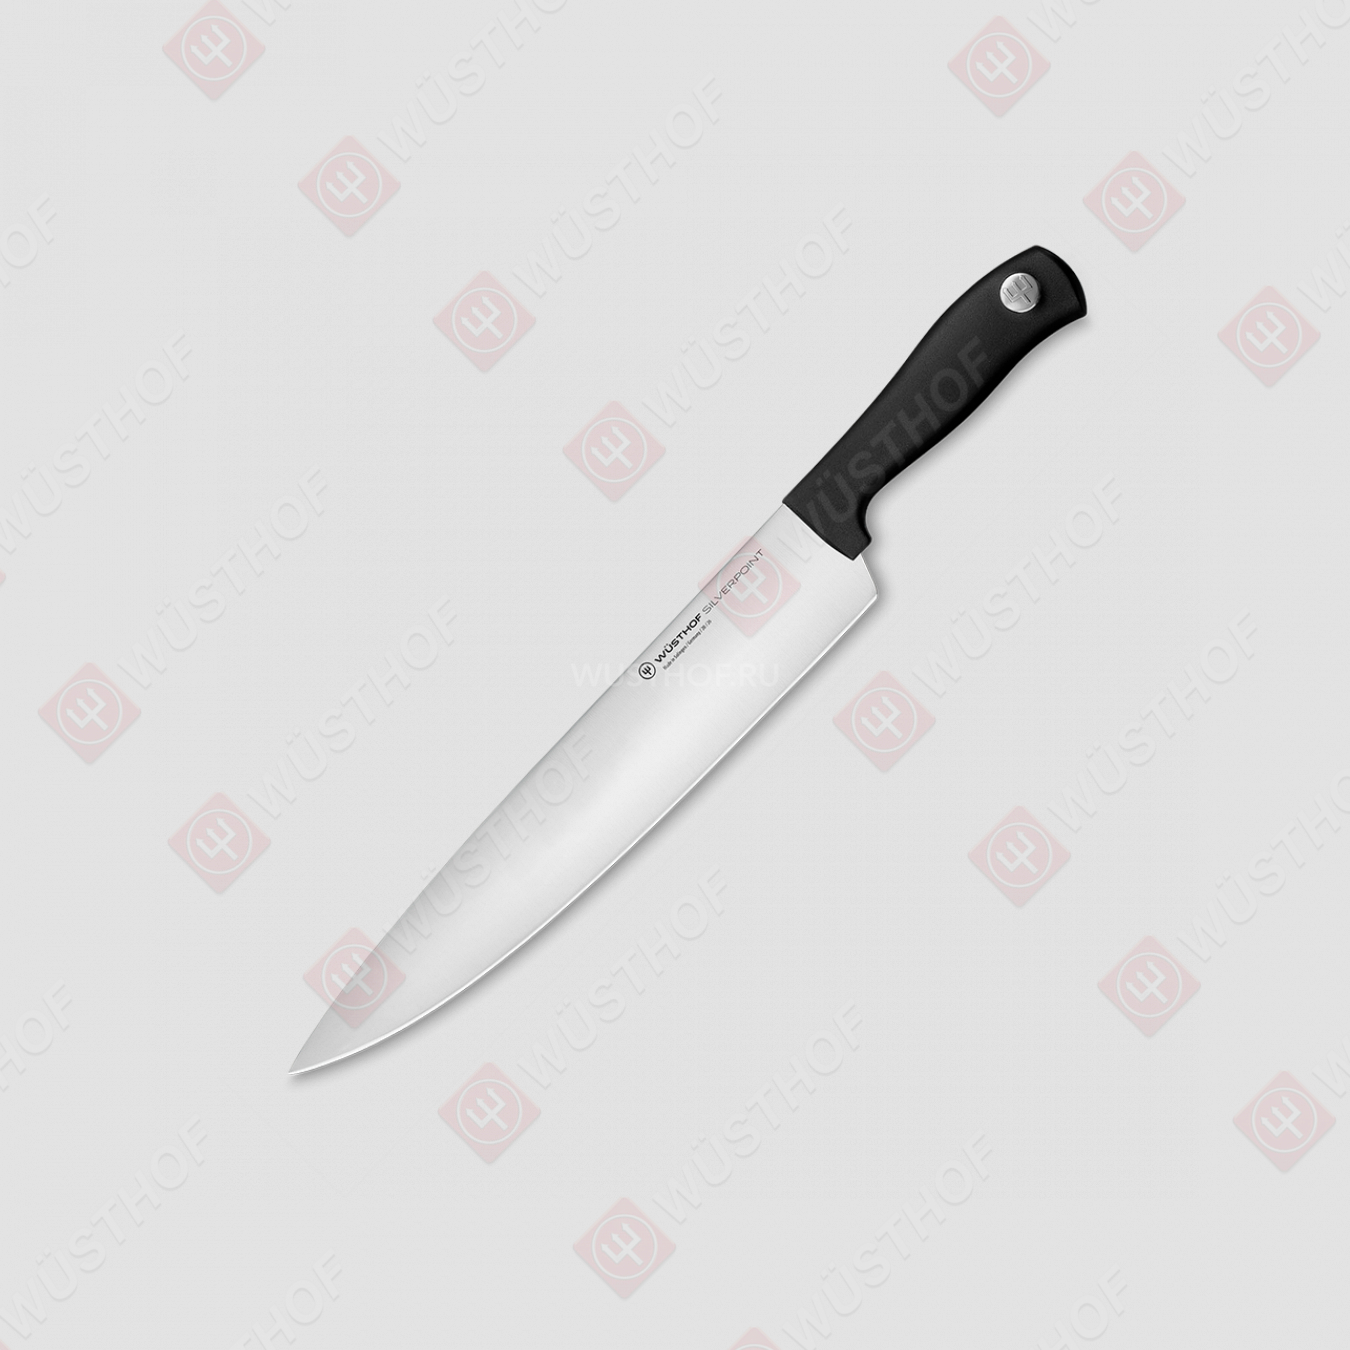 Профессиональный поварской кухонный нож 26 см, серия Silverpoint, WUESTHOF, Золинген, Германия